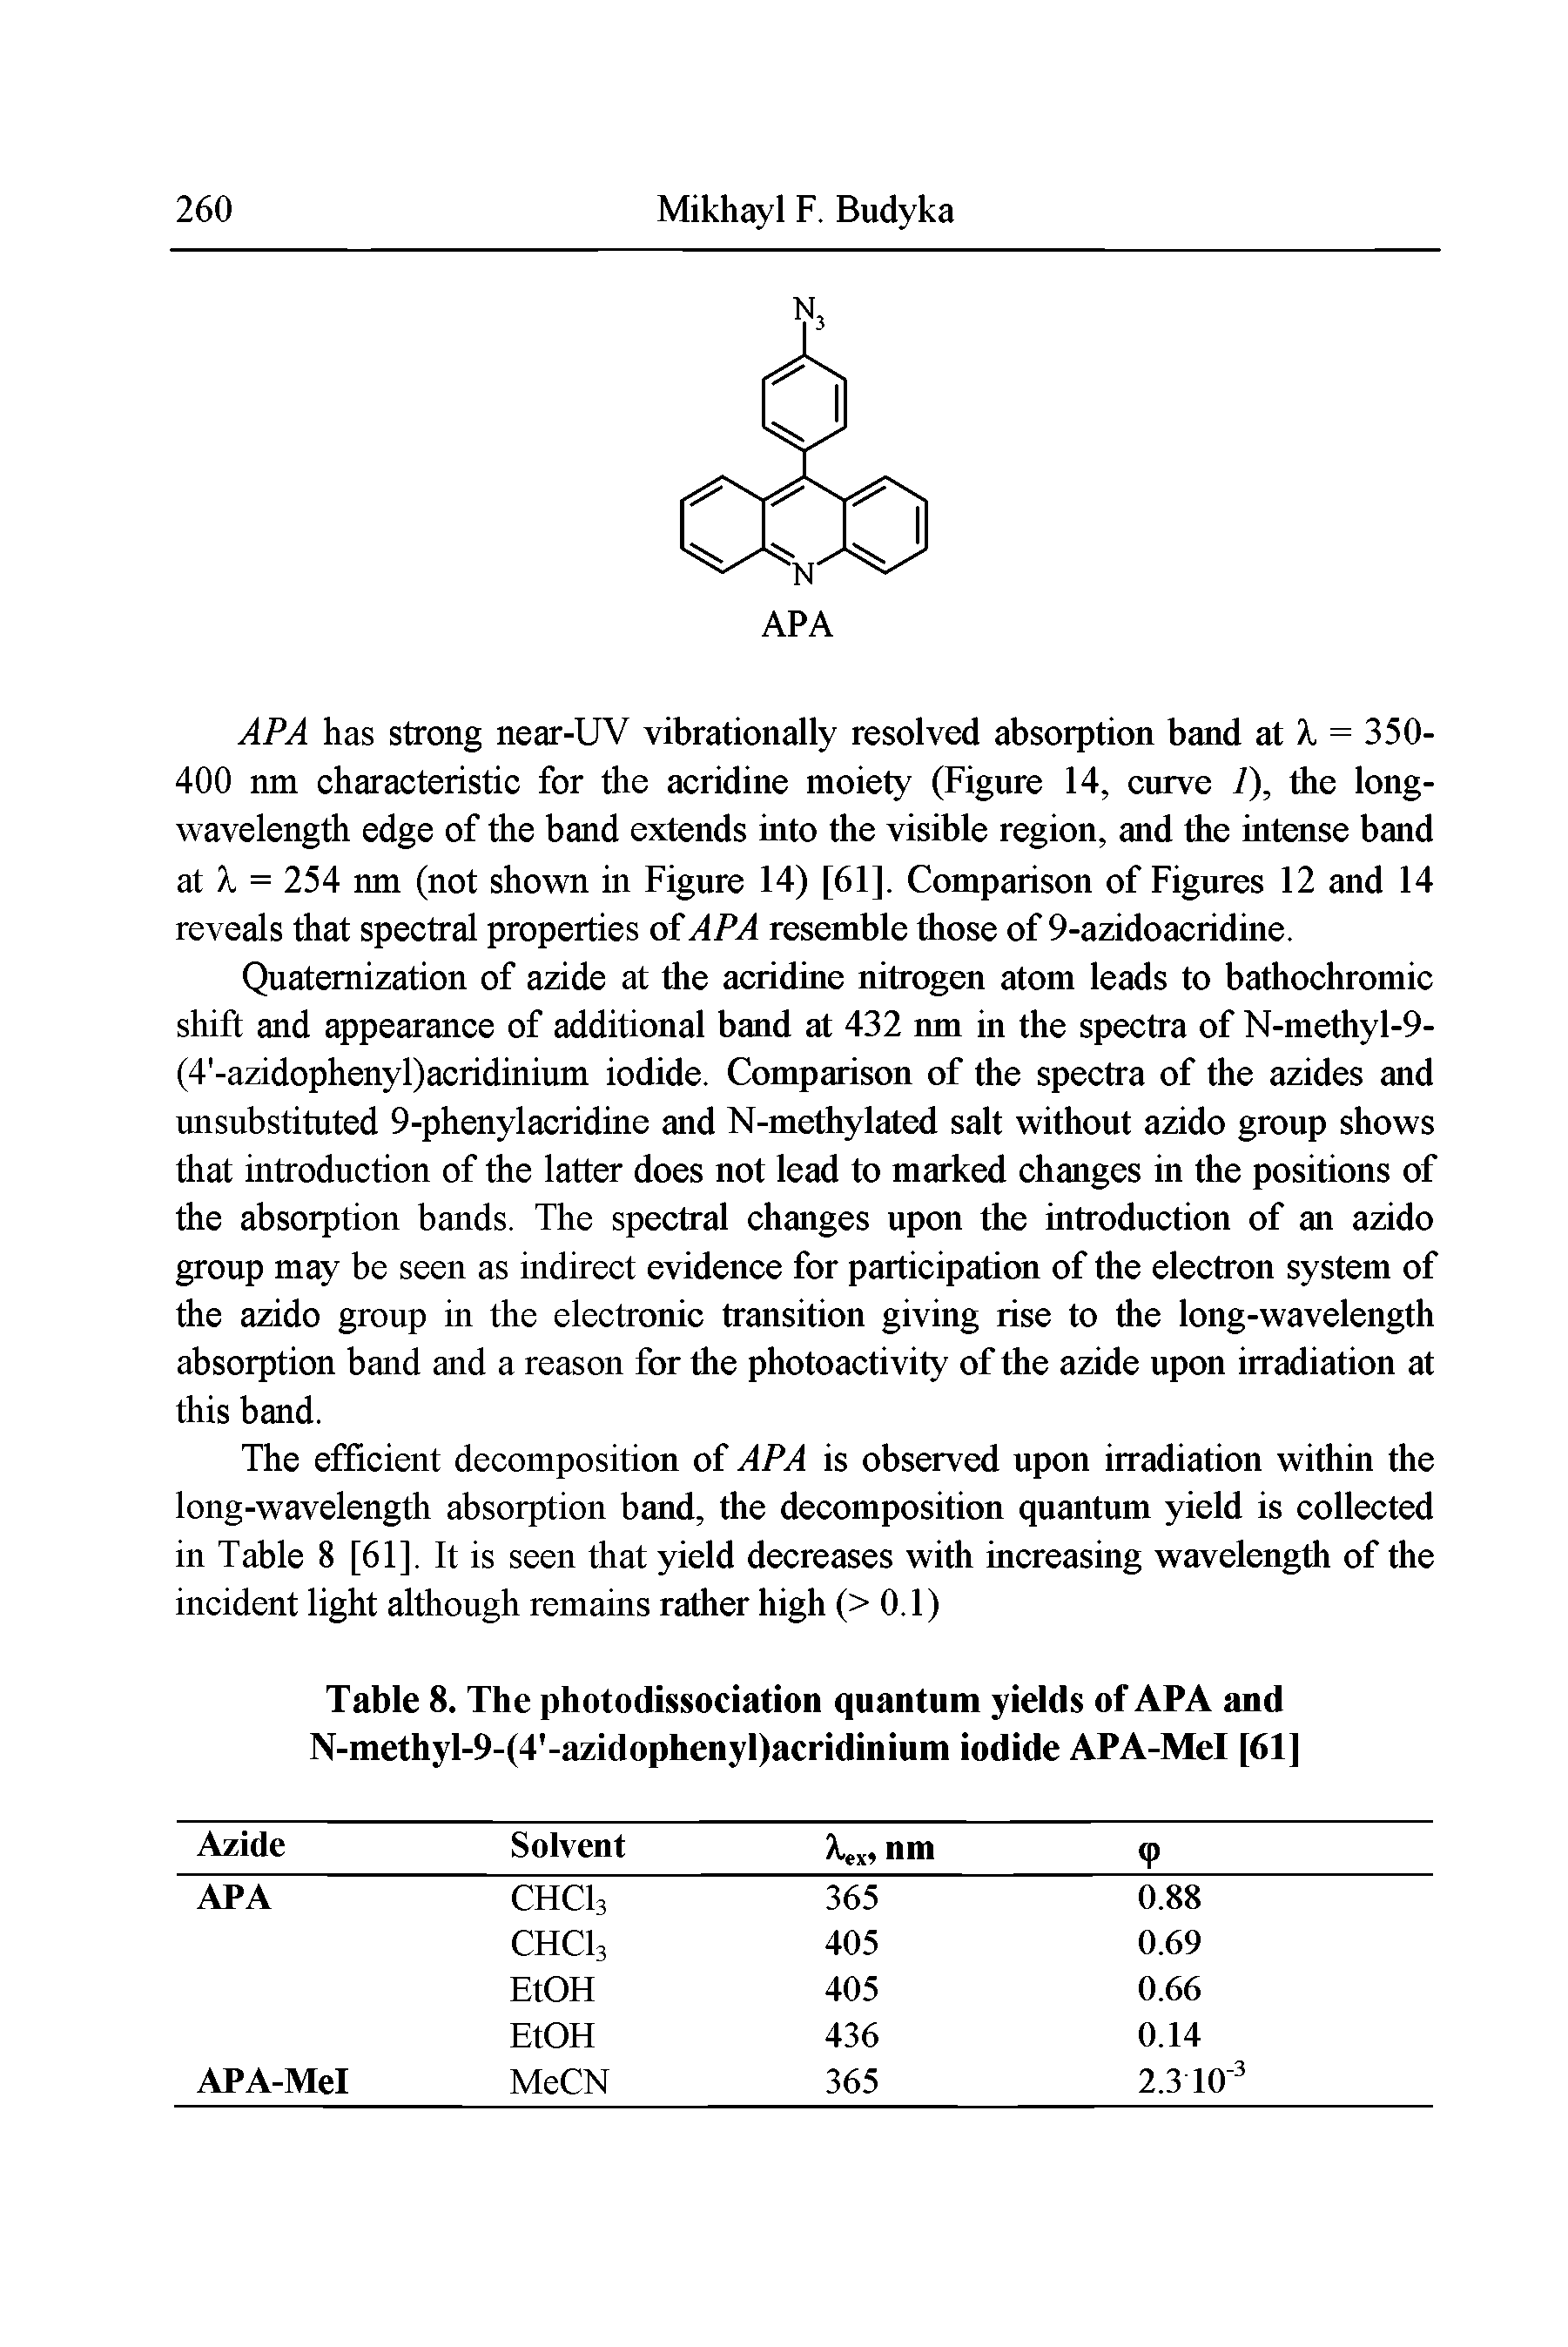 Table 8. The photodissociation quantum yields of APA and N-methyl-9-(4 -azidophenyl)acridinium iodide APA-Mel [61]...